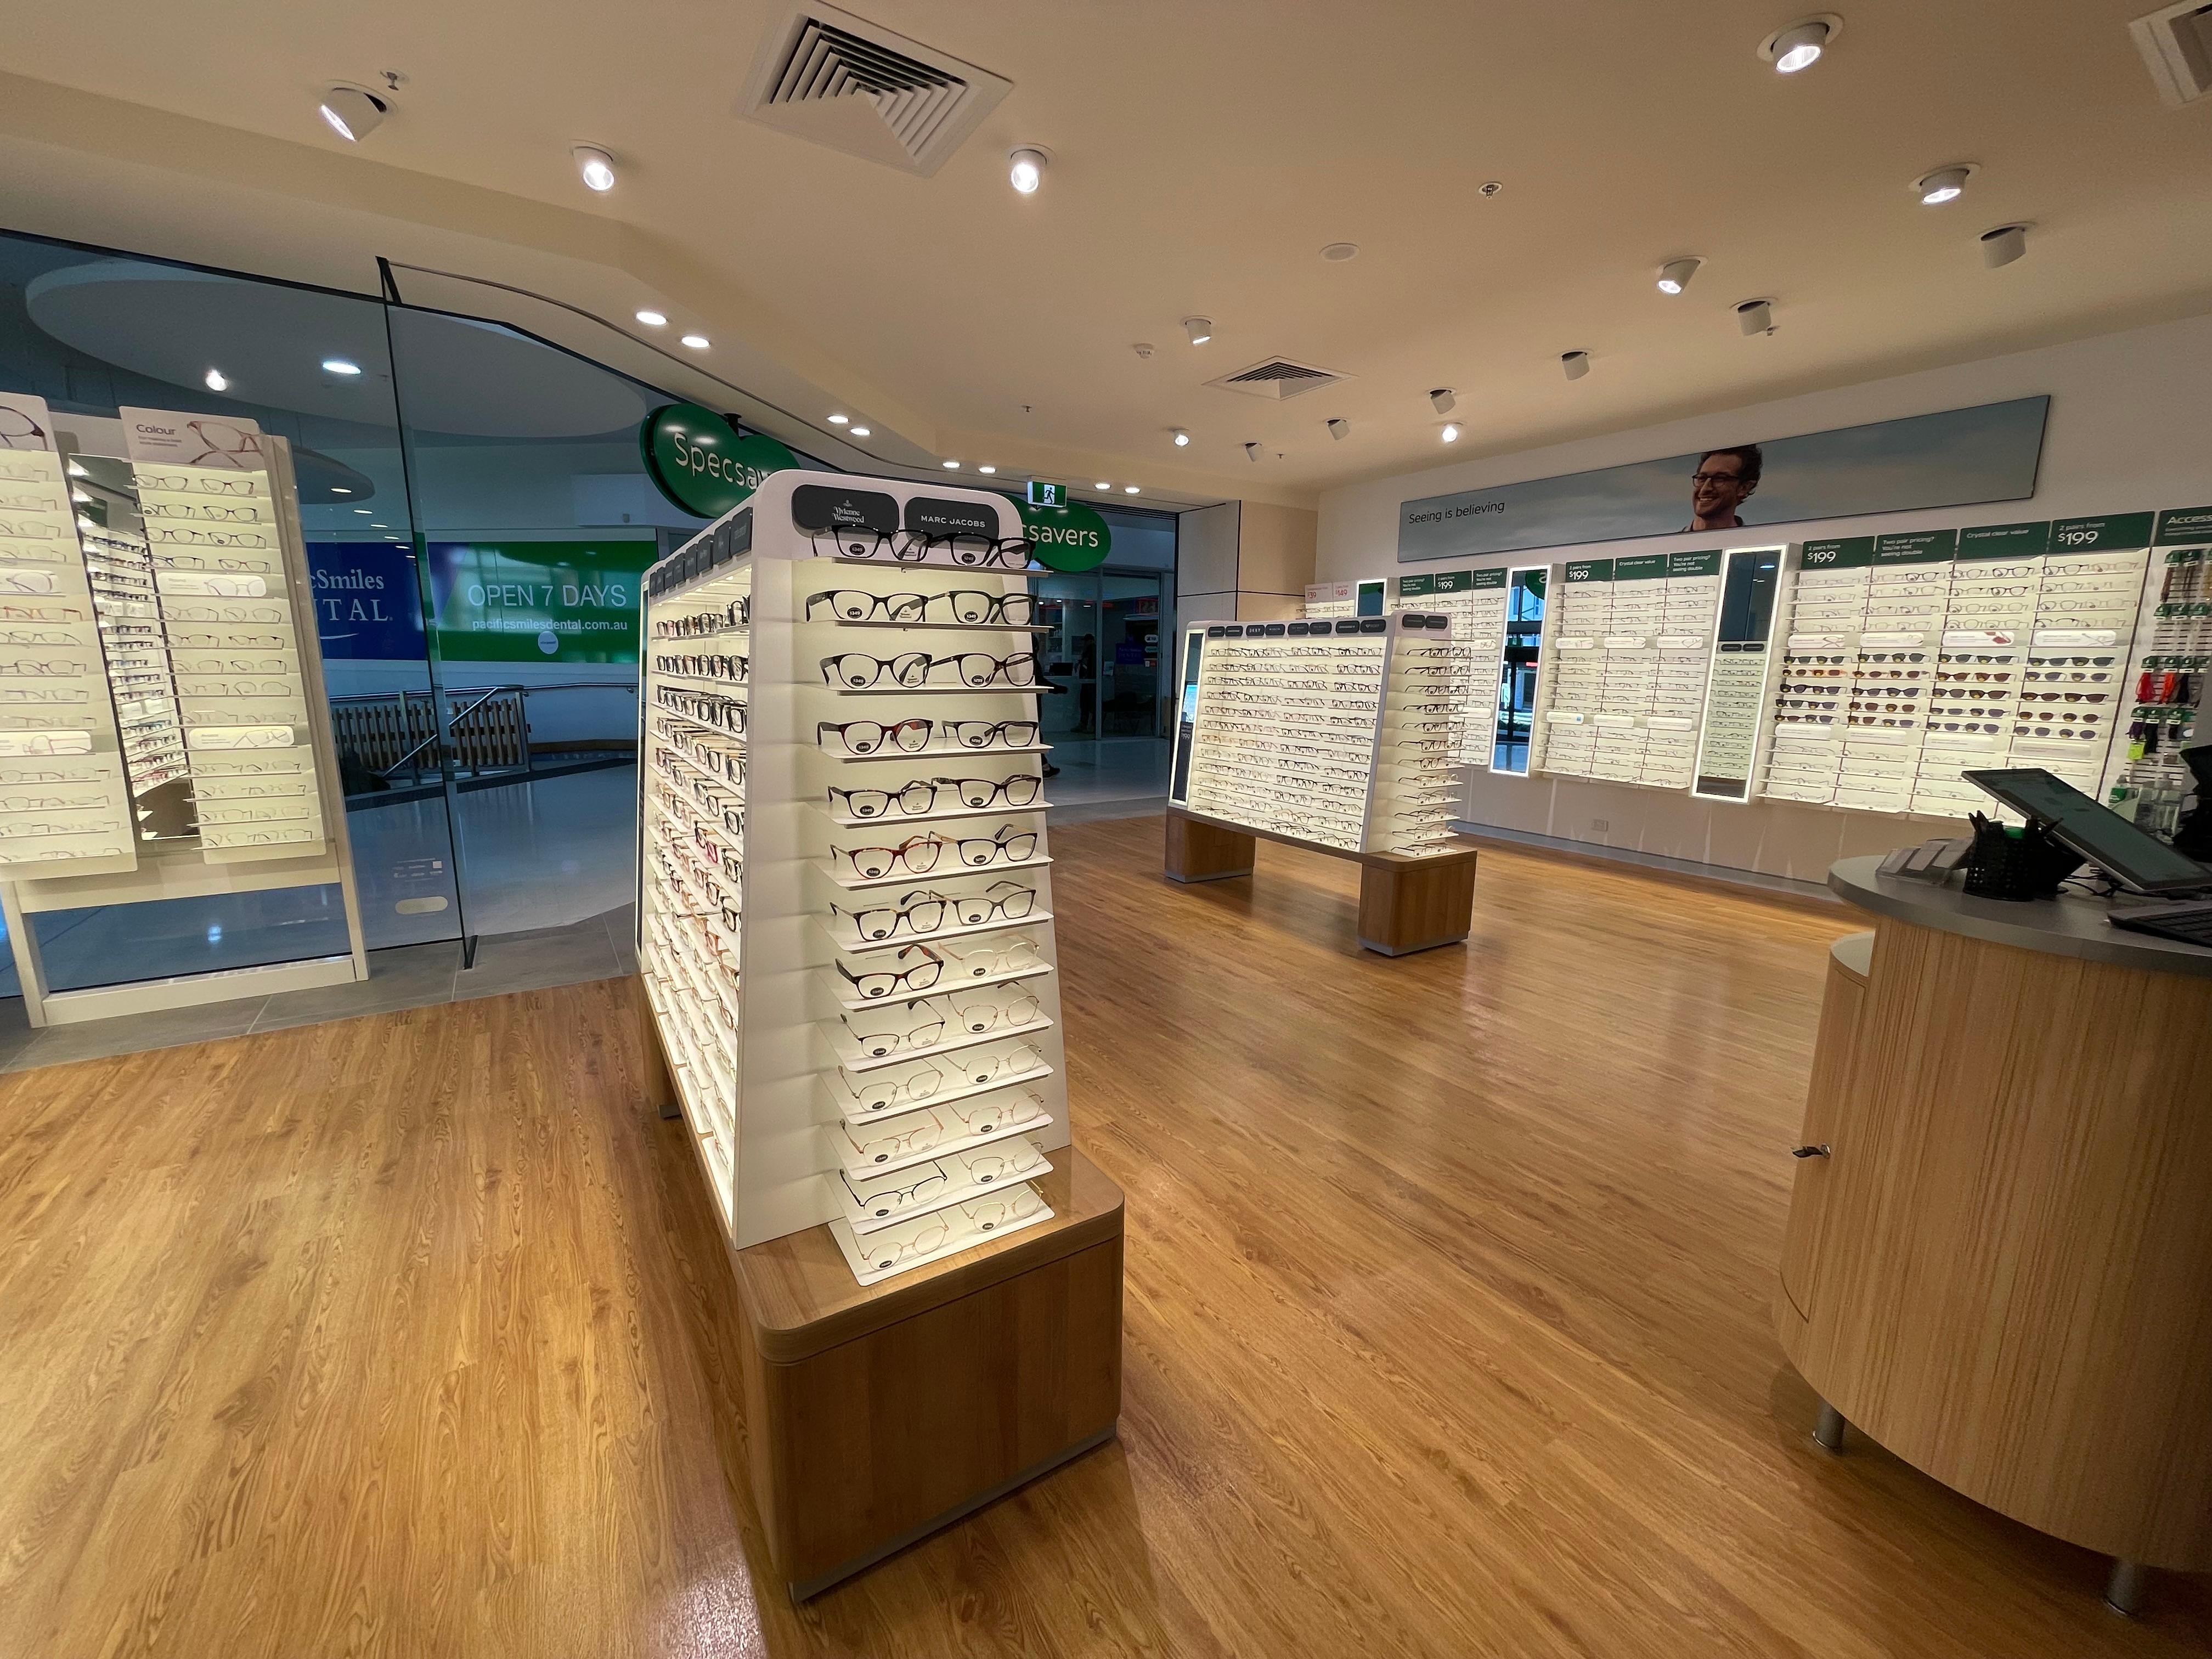 Specsavers Optometrists & Audiology - Queanbeyan - Riverside Queanbeyan (02) 6232 9533